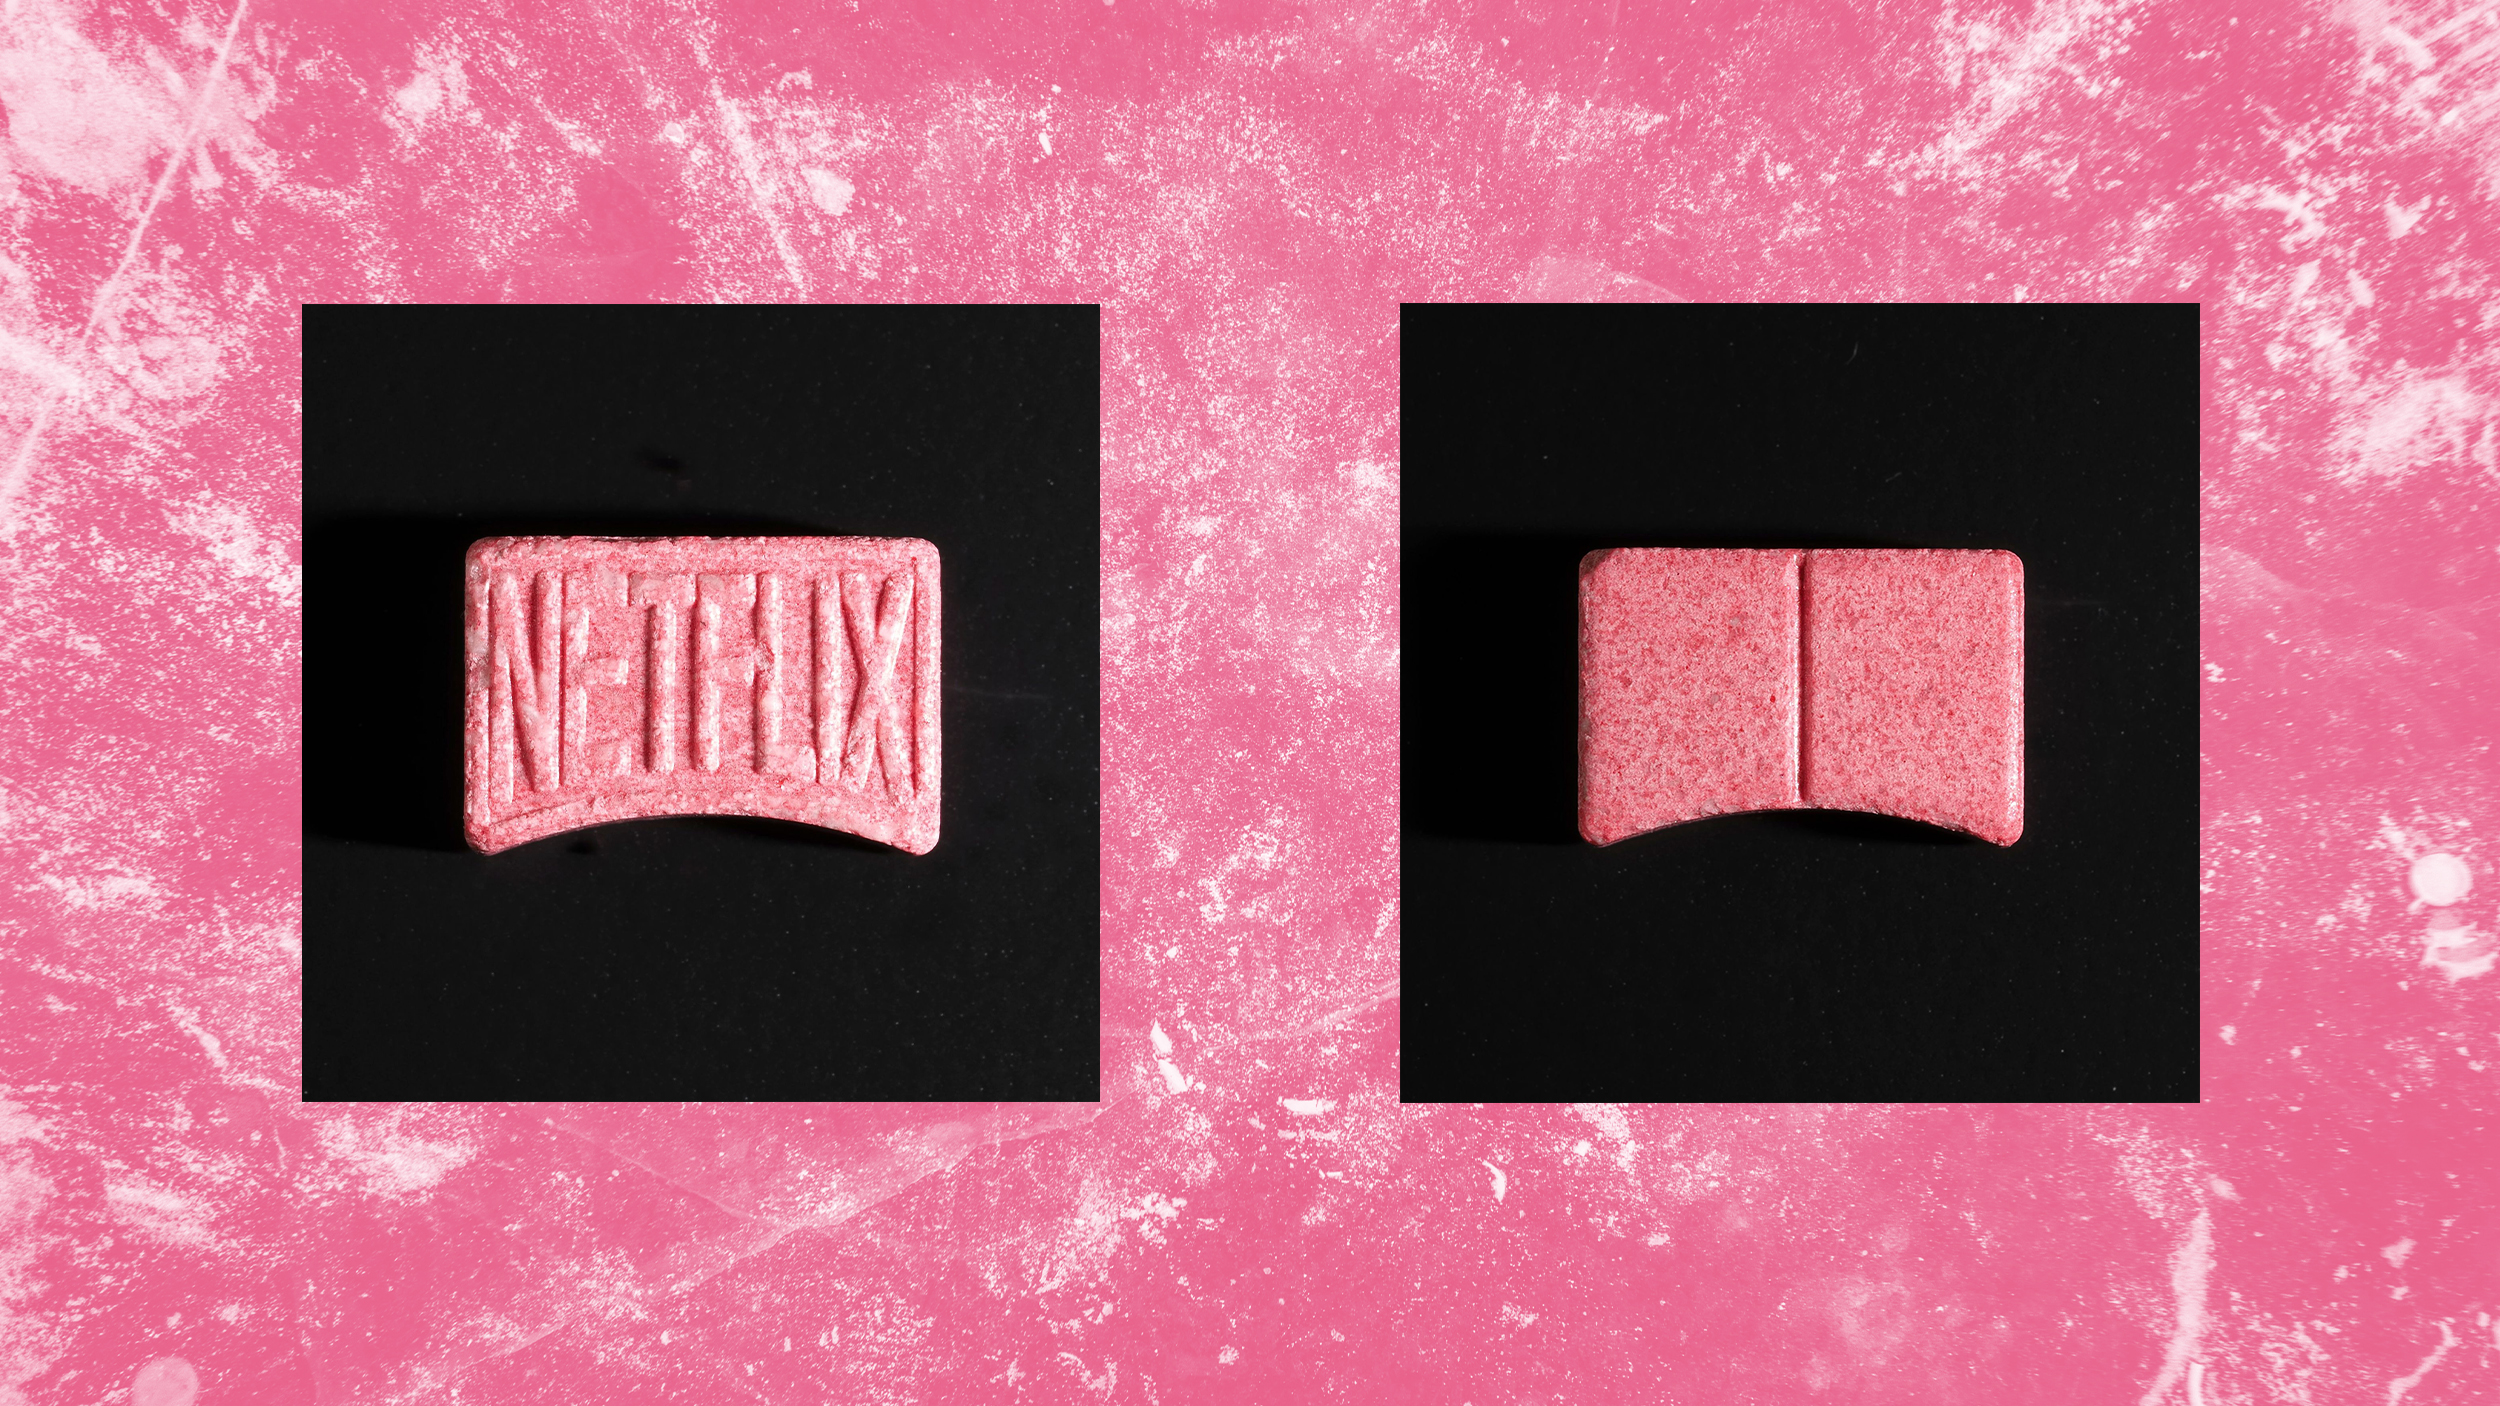 Eine pinke Pille in Form des Netflix-Logos auf pinkem Hintergrund